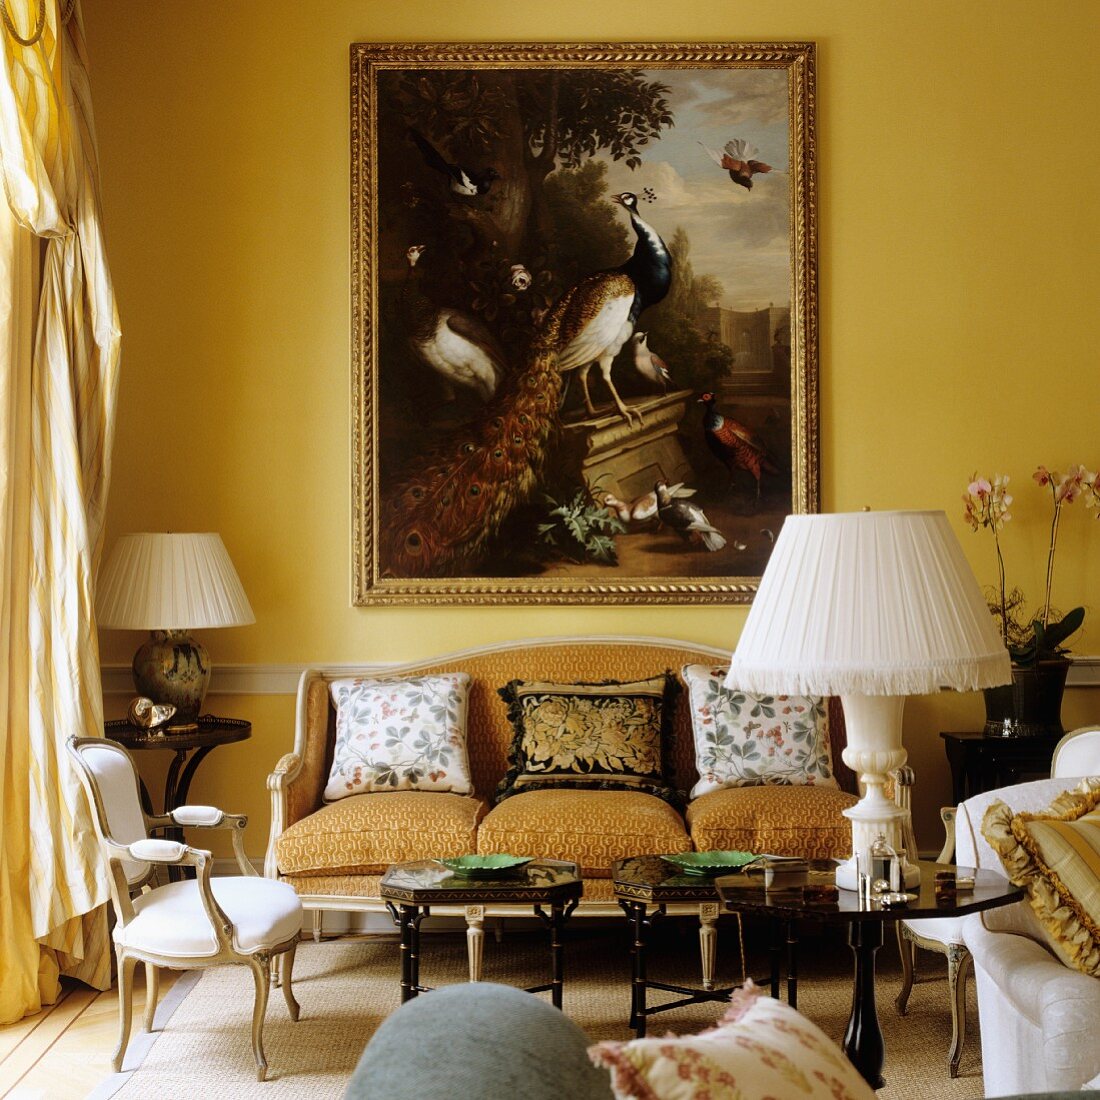 Tischlampe mit weißem Stoffschirm auf kleinen Beistelltisch vor Sitzbank im Rokokostil und altes Gemälde an gelb getönter Wand